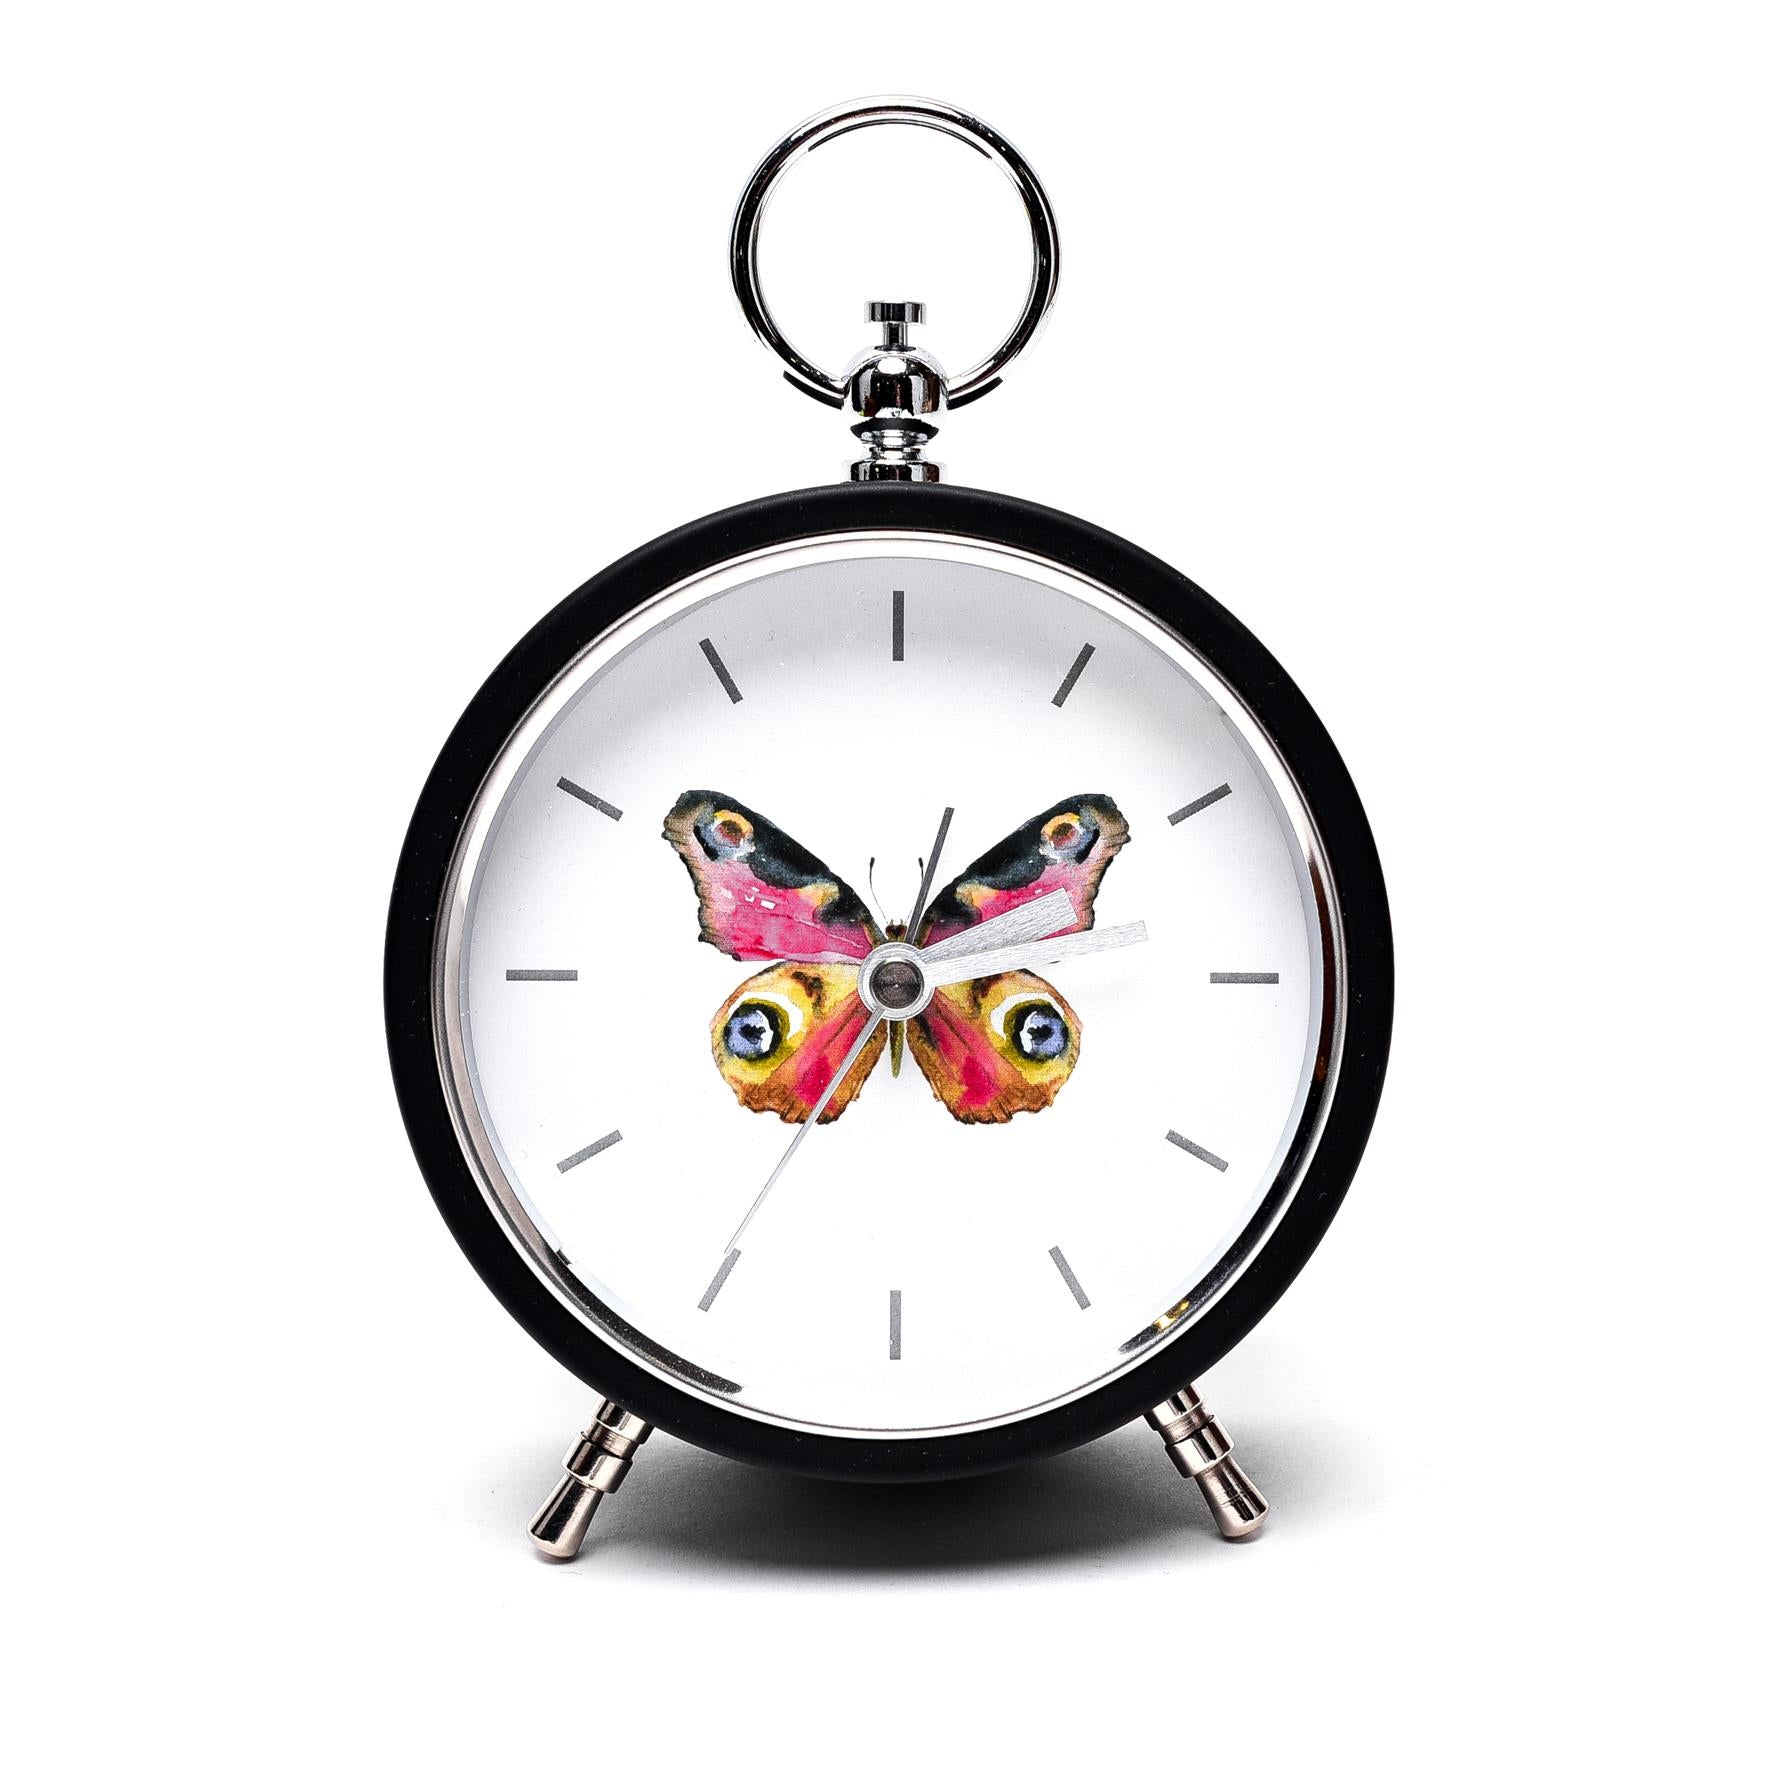 Widdop Hestia Butterfly Mantel Clock Metal Case HE1732